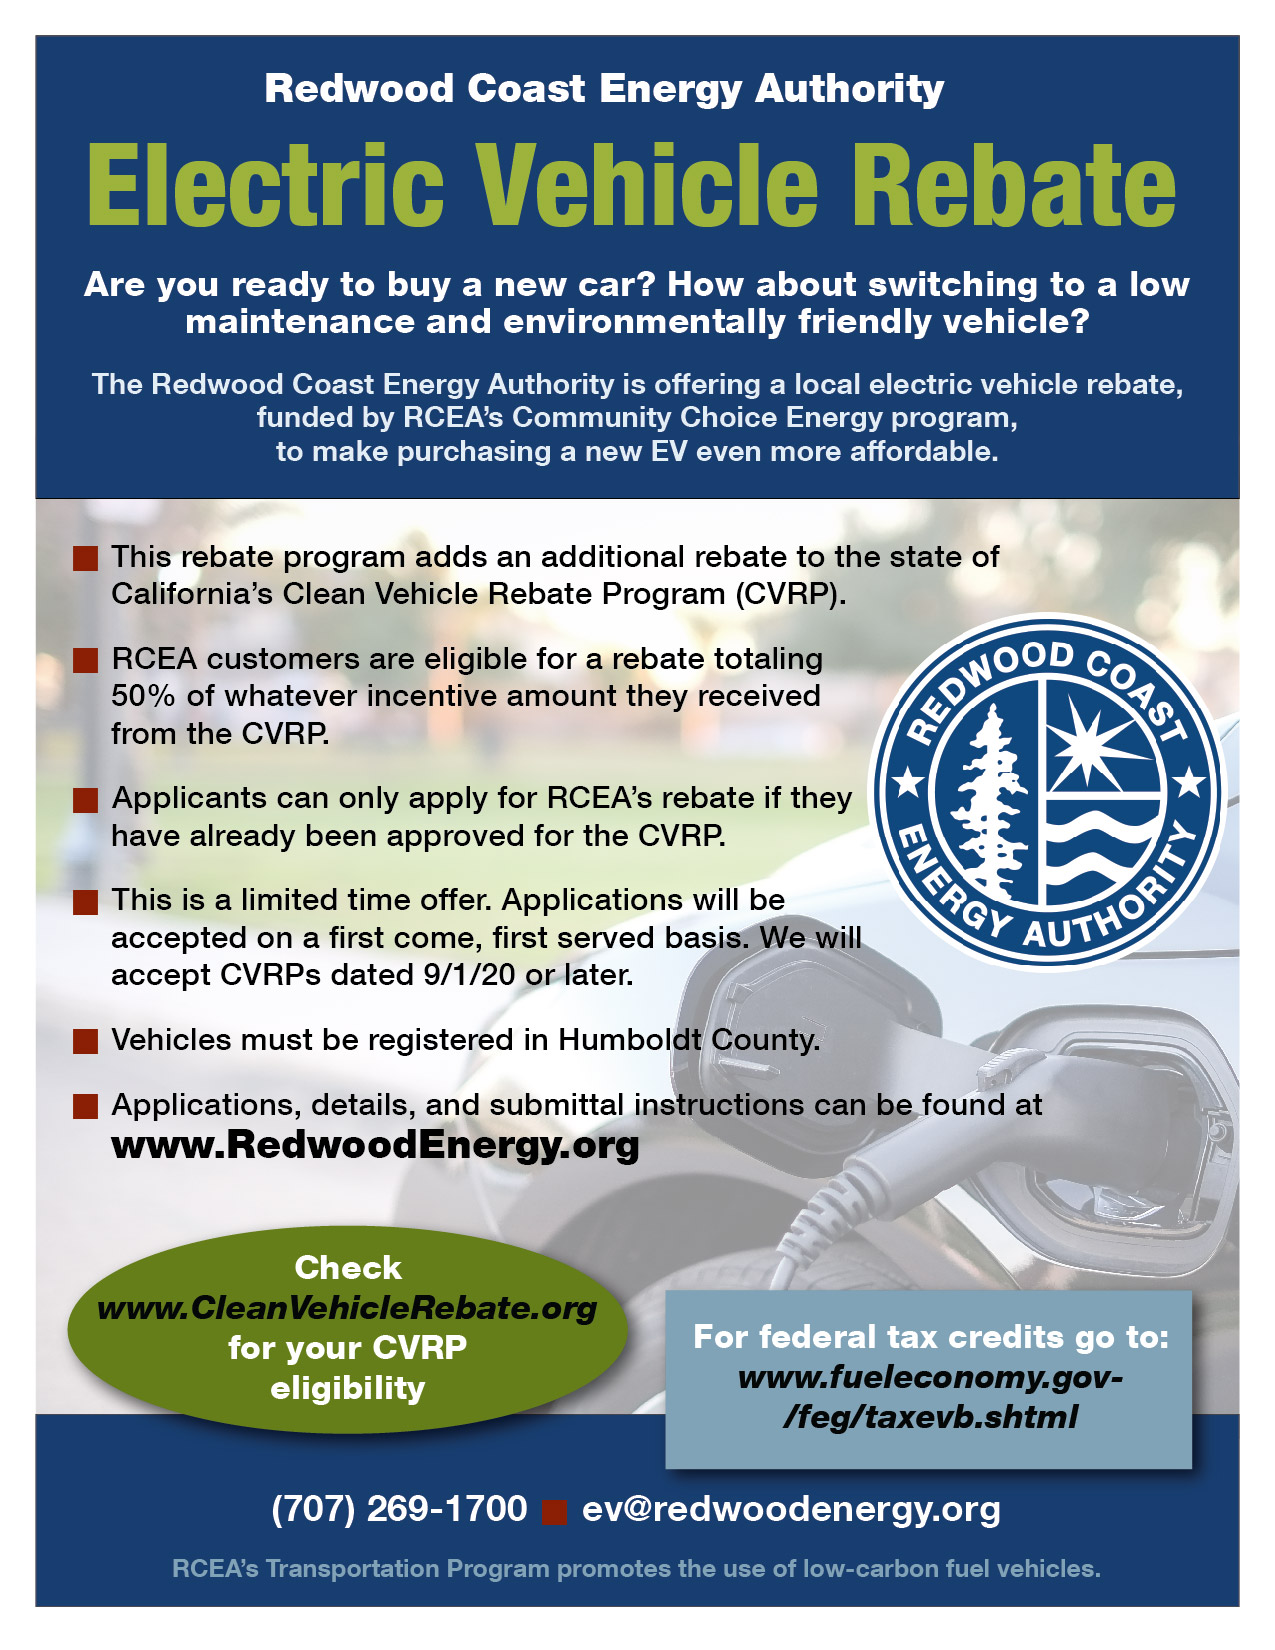 Electric Vehicle Rebate Flyer